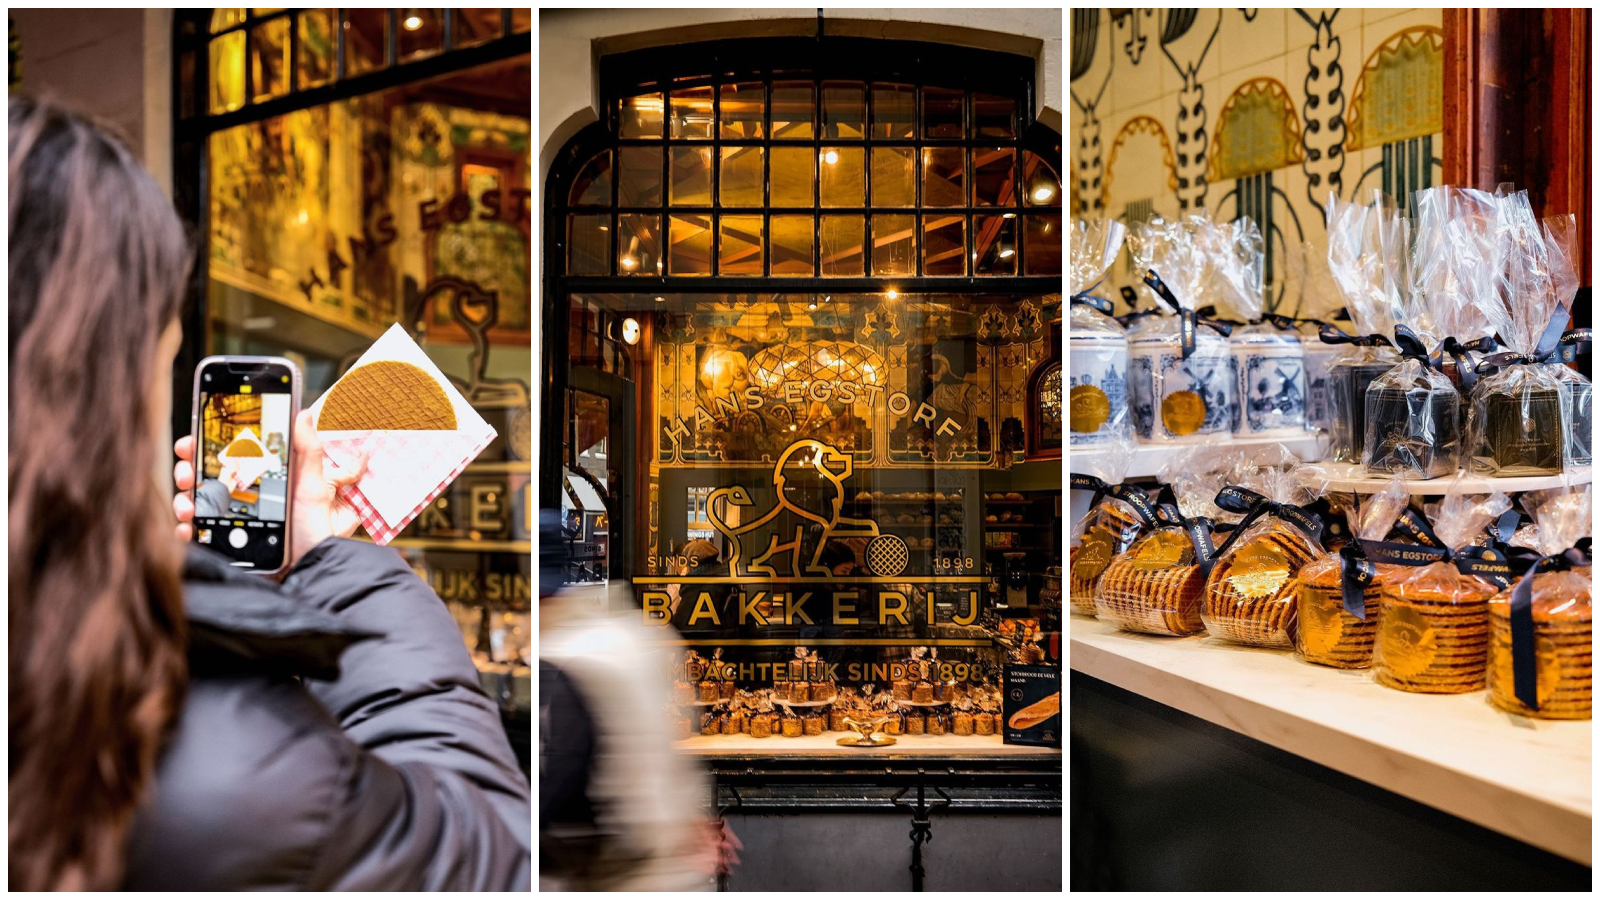 Još jedan razlog za posjet Amsterdamu su najukusniji vafli koje ćete pronaći u ovoj pekari